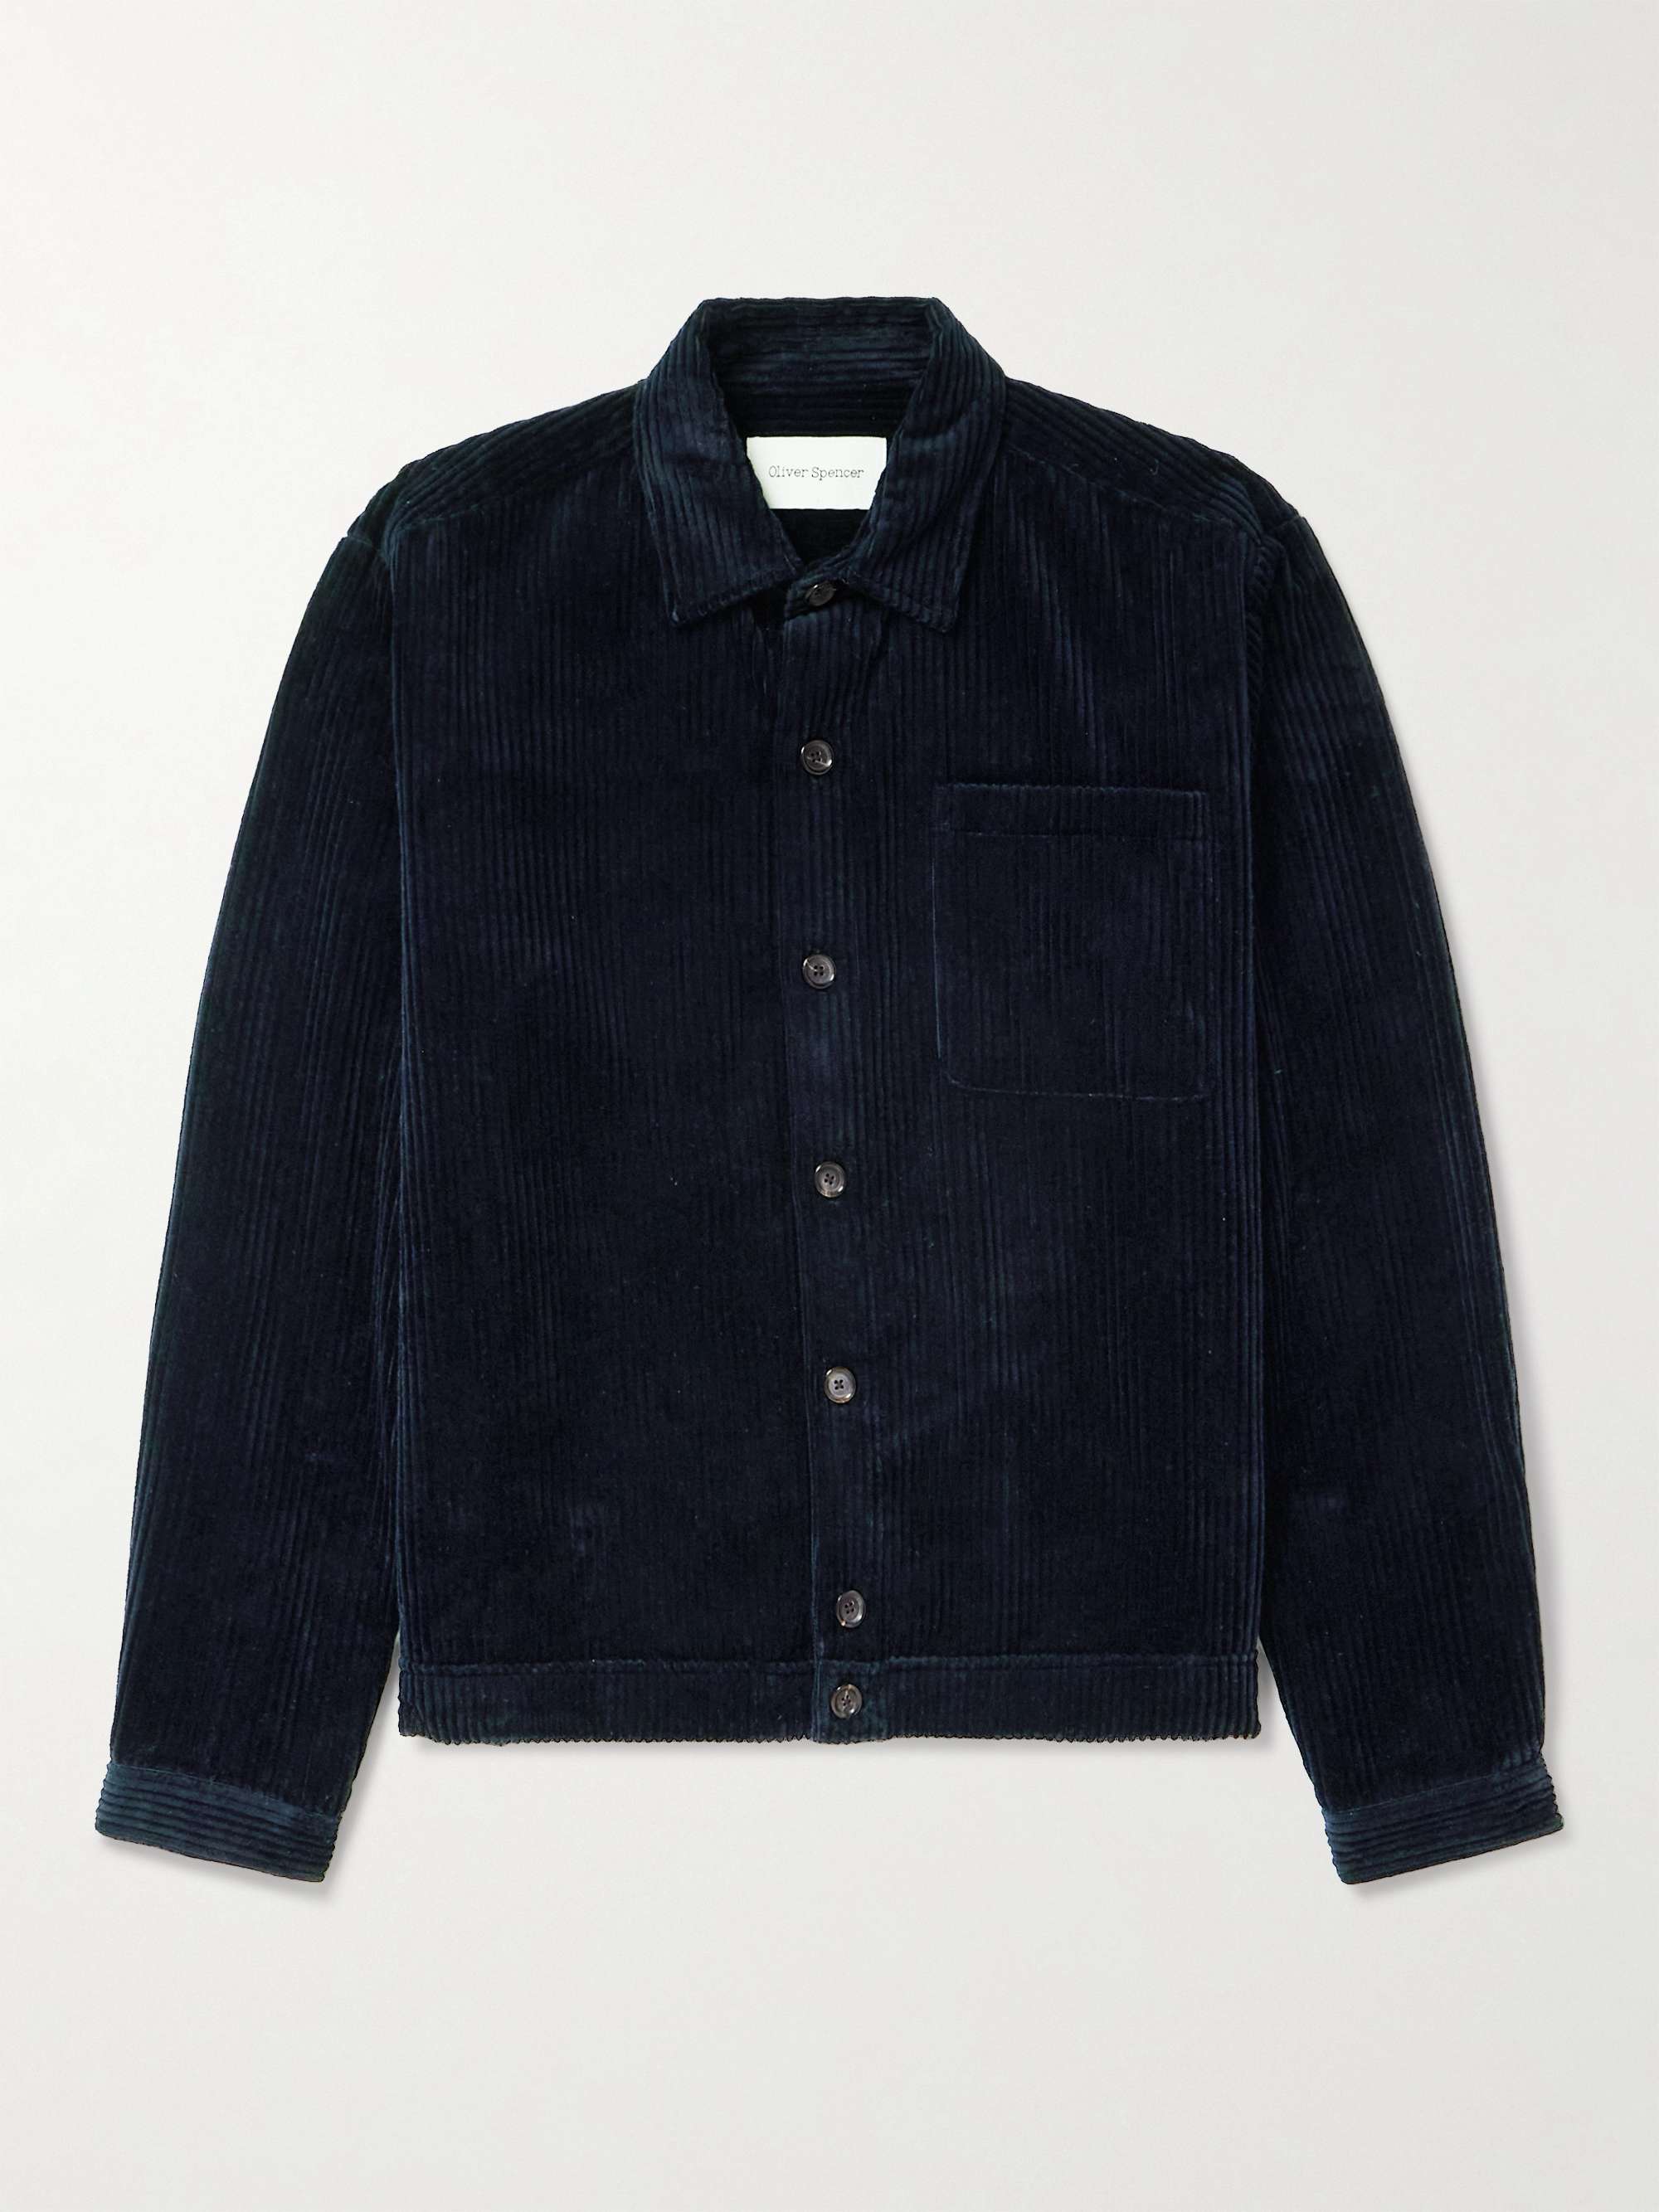 OLIVER SPENCER Milford Cotton-Corduroy Jacket for Men | MR PORTER